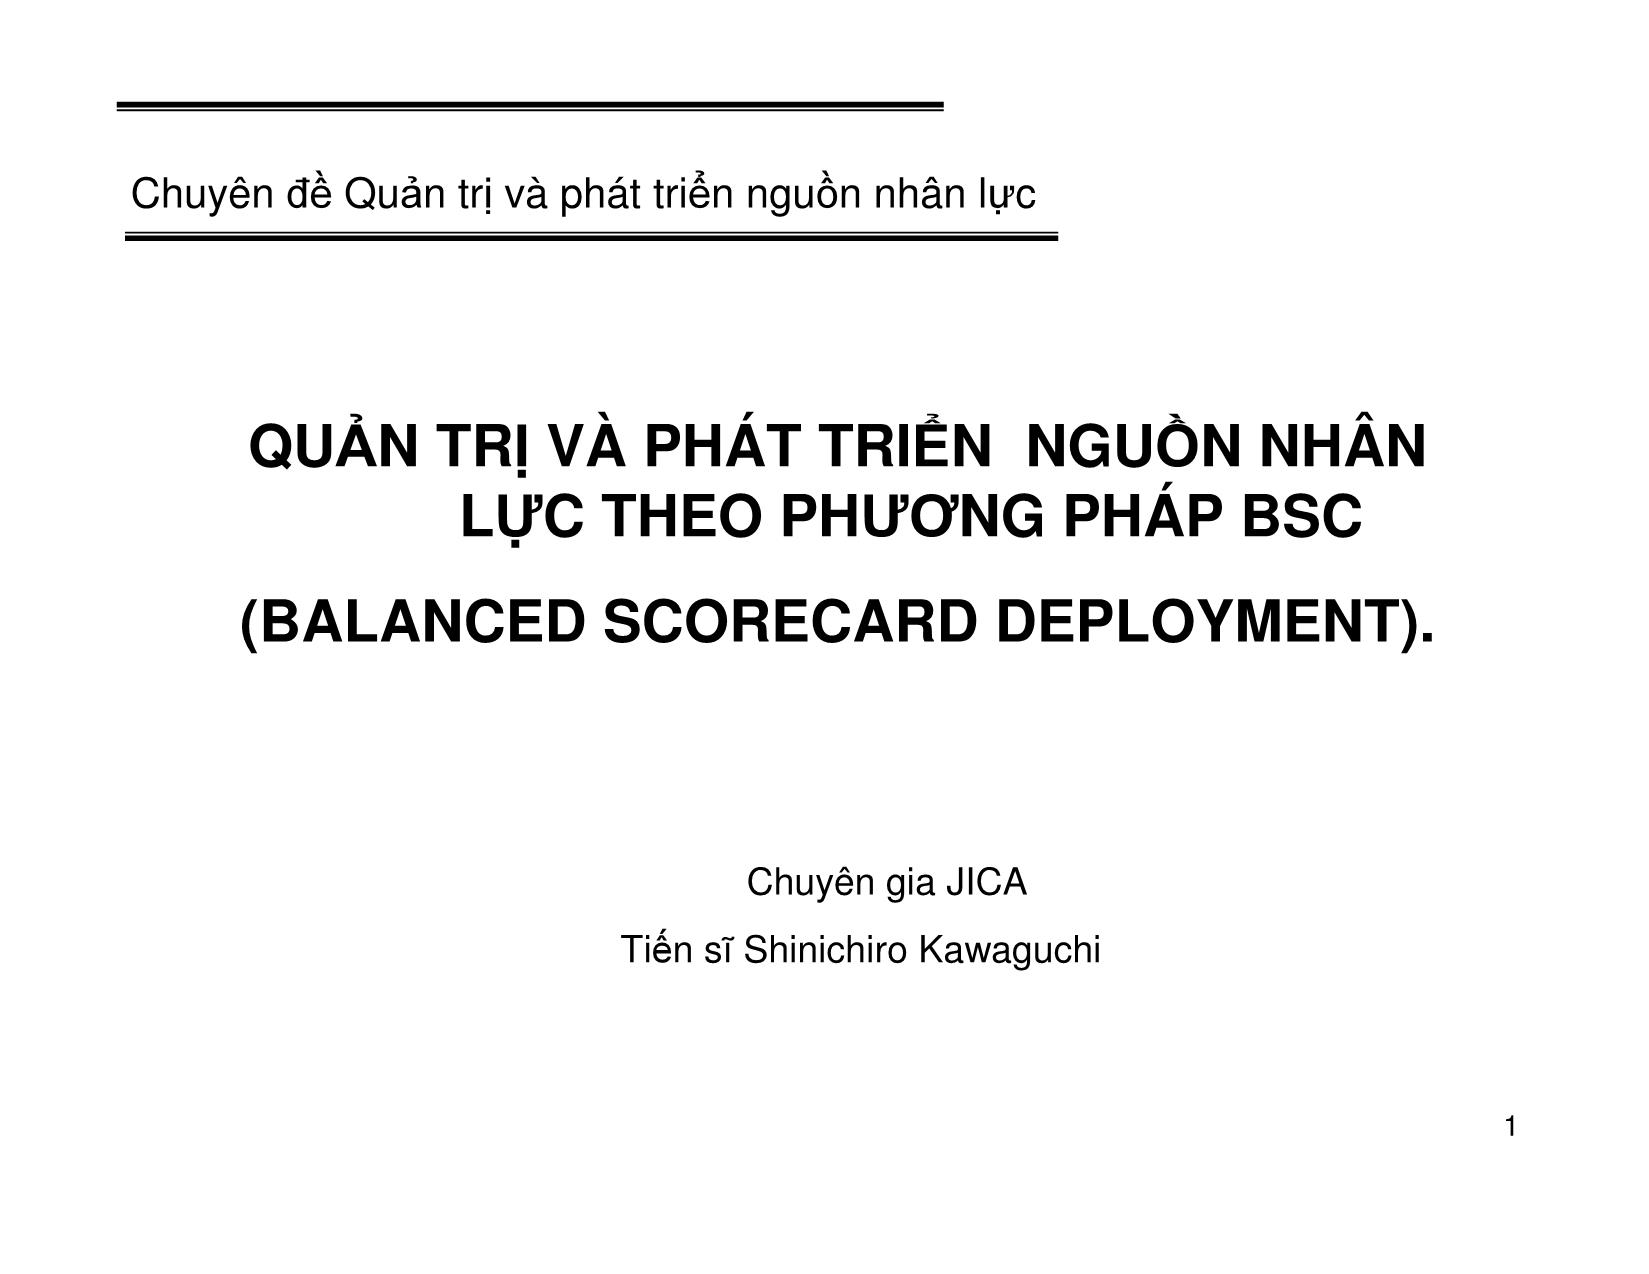 Quản trị và phát triển nguồn nhân lực theo phương pháp BSC (Balanced Scorecard Deployment) trang 1